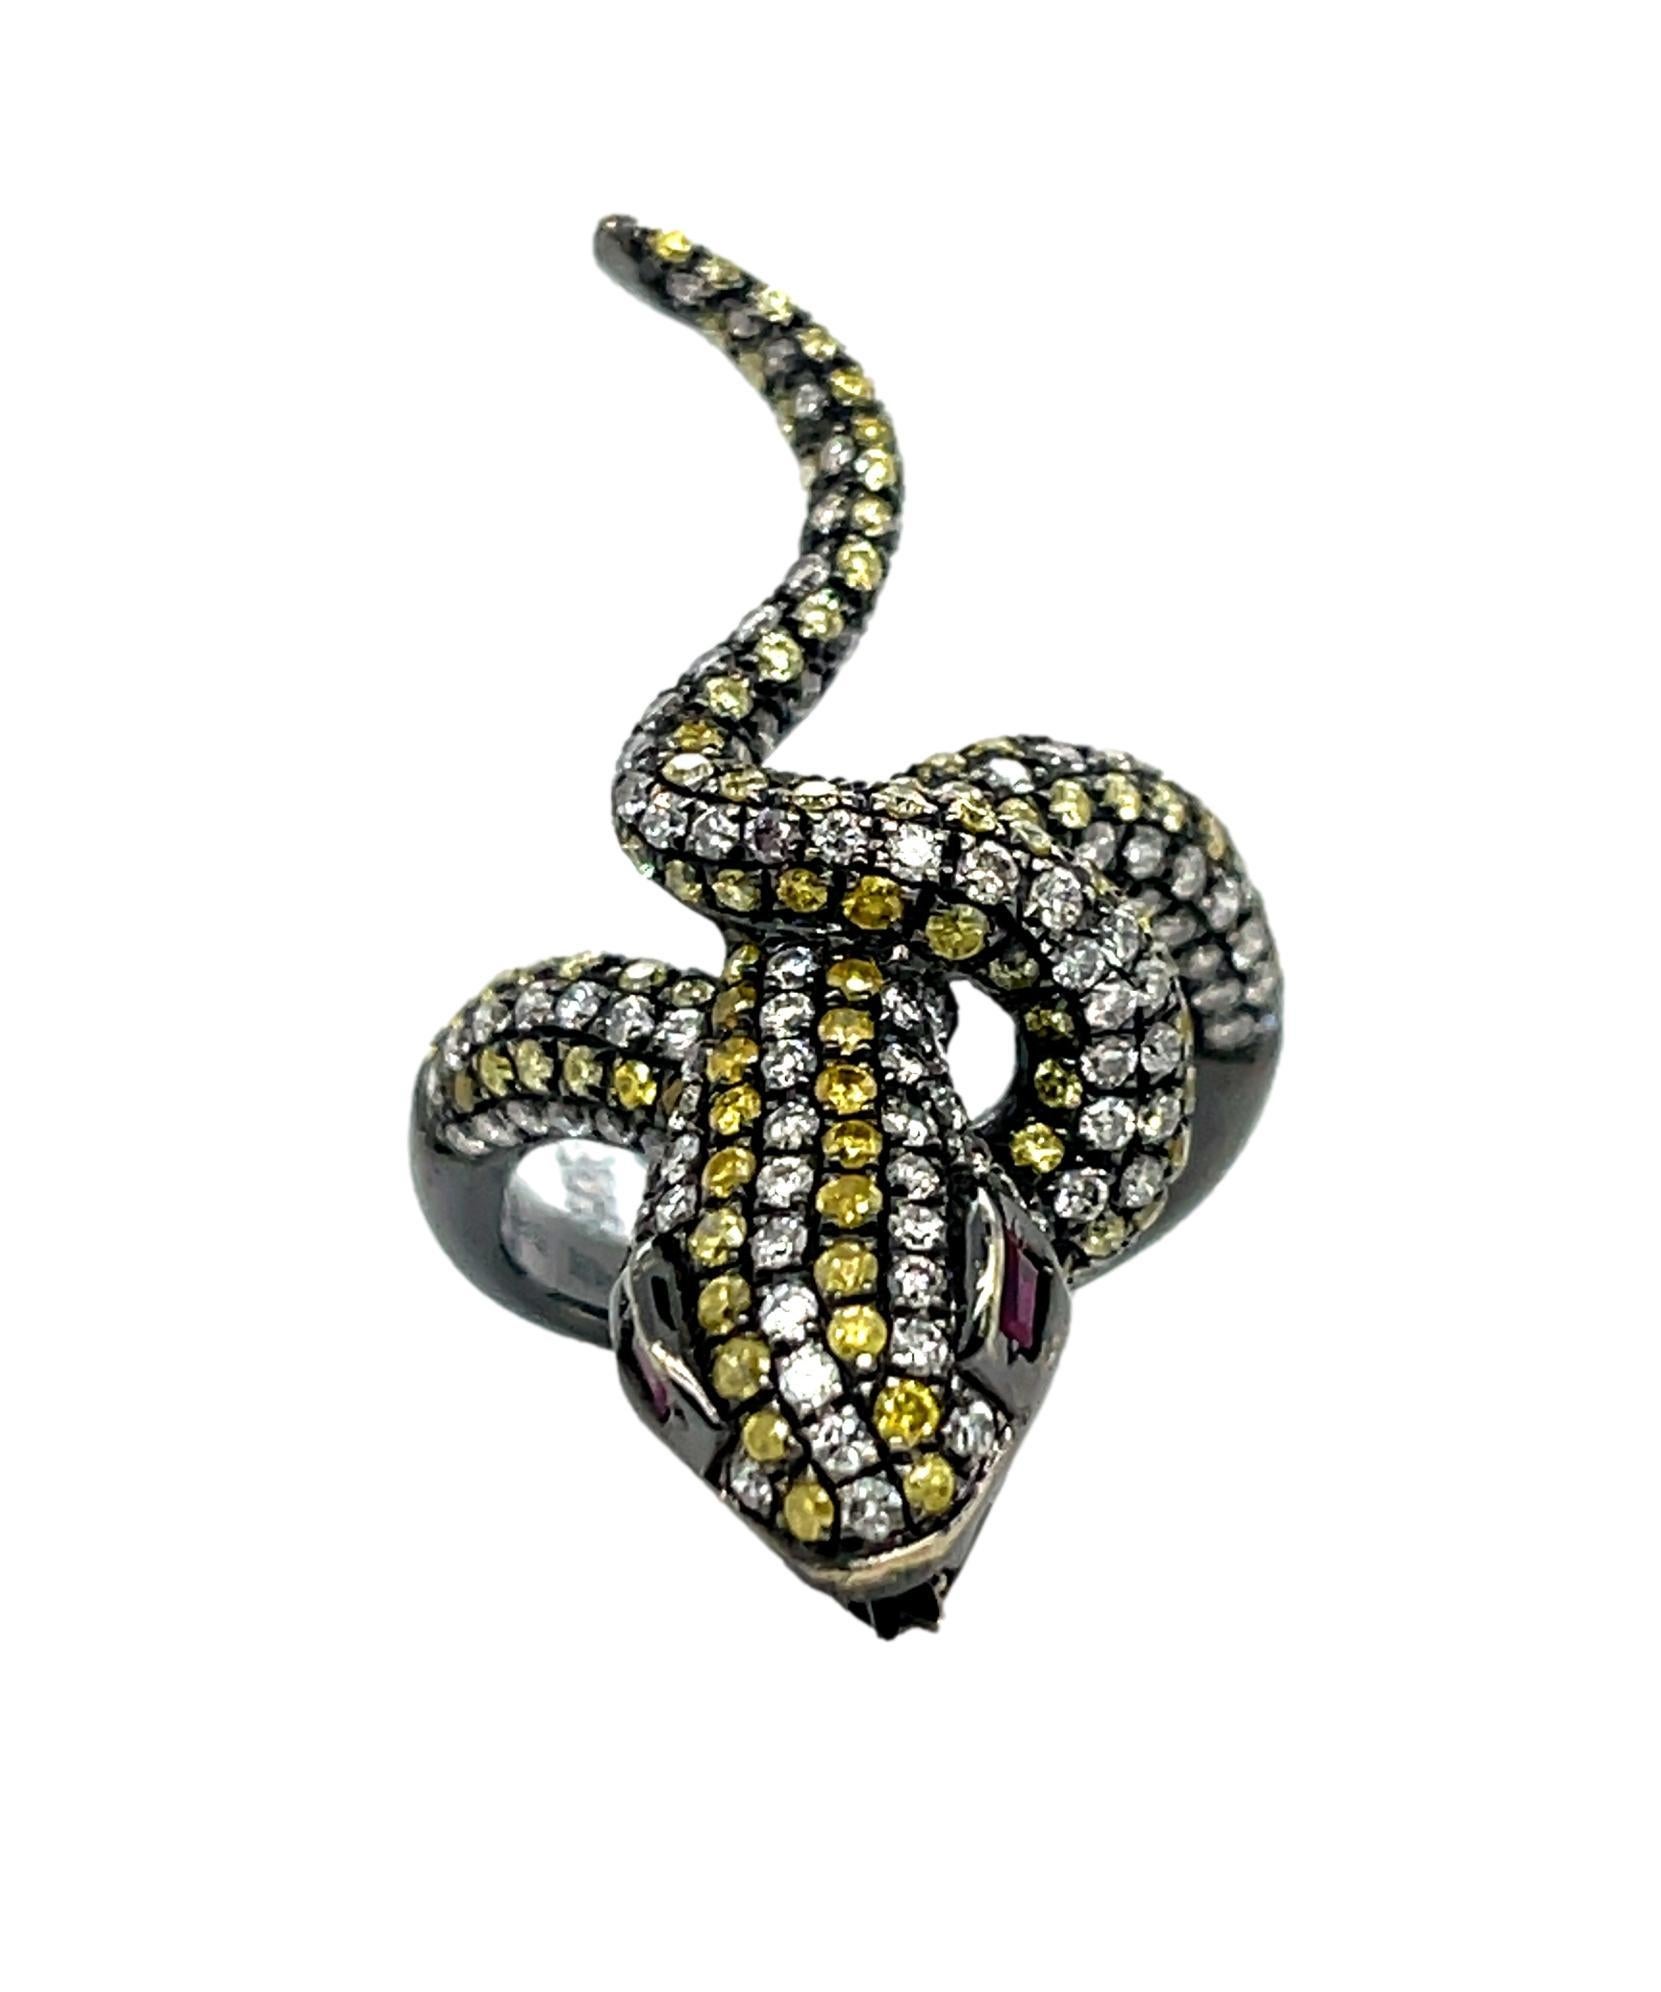 Dieser einzigartige Schlangenring hat über 120 runde, farbige Diamanten im Brillantschliff und ist der perfekte Ring für ein besonderes Ereignis. Zwei natürliche, spitz zulaufende Baguette-Rubine für die Augen sorgen für einen perfekten Akzent.